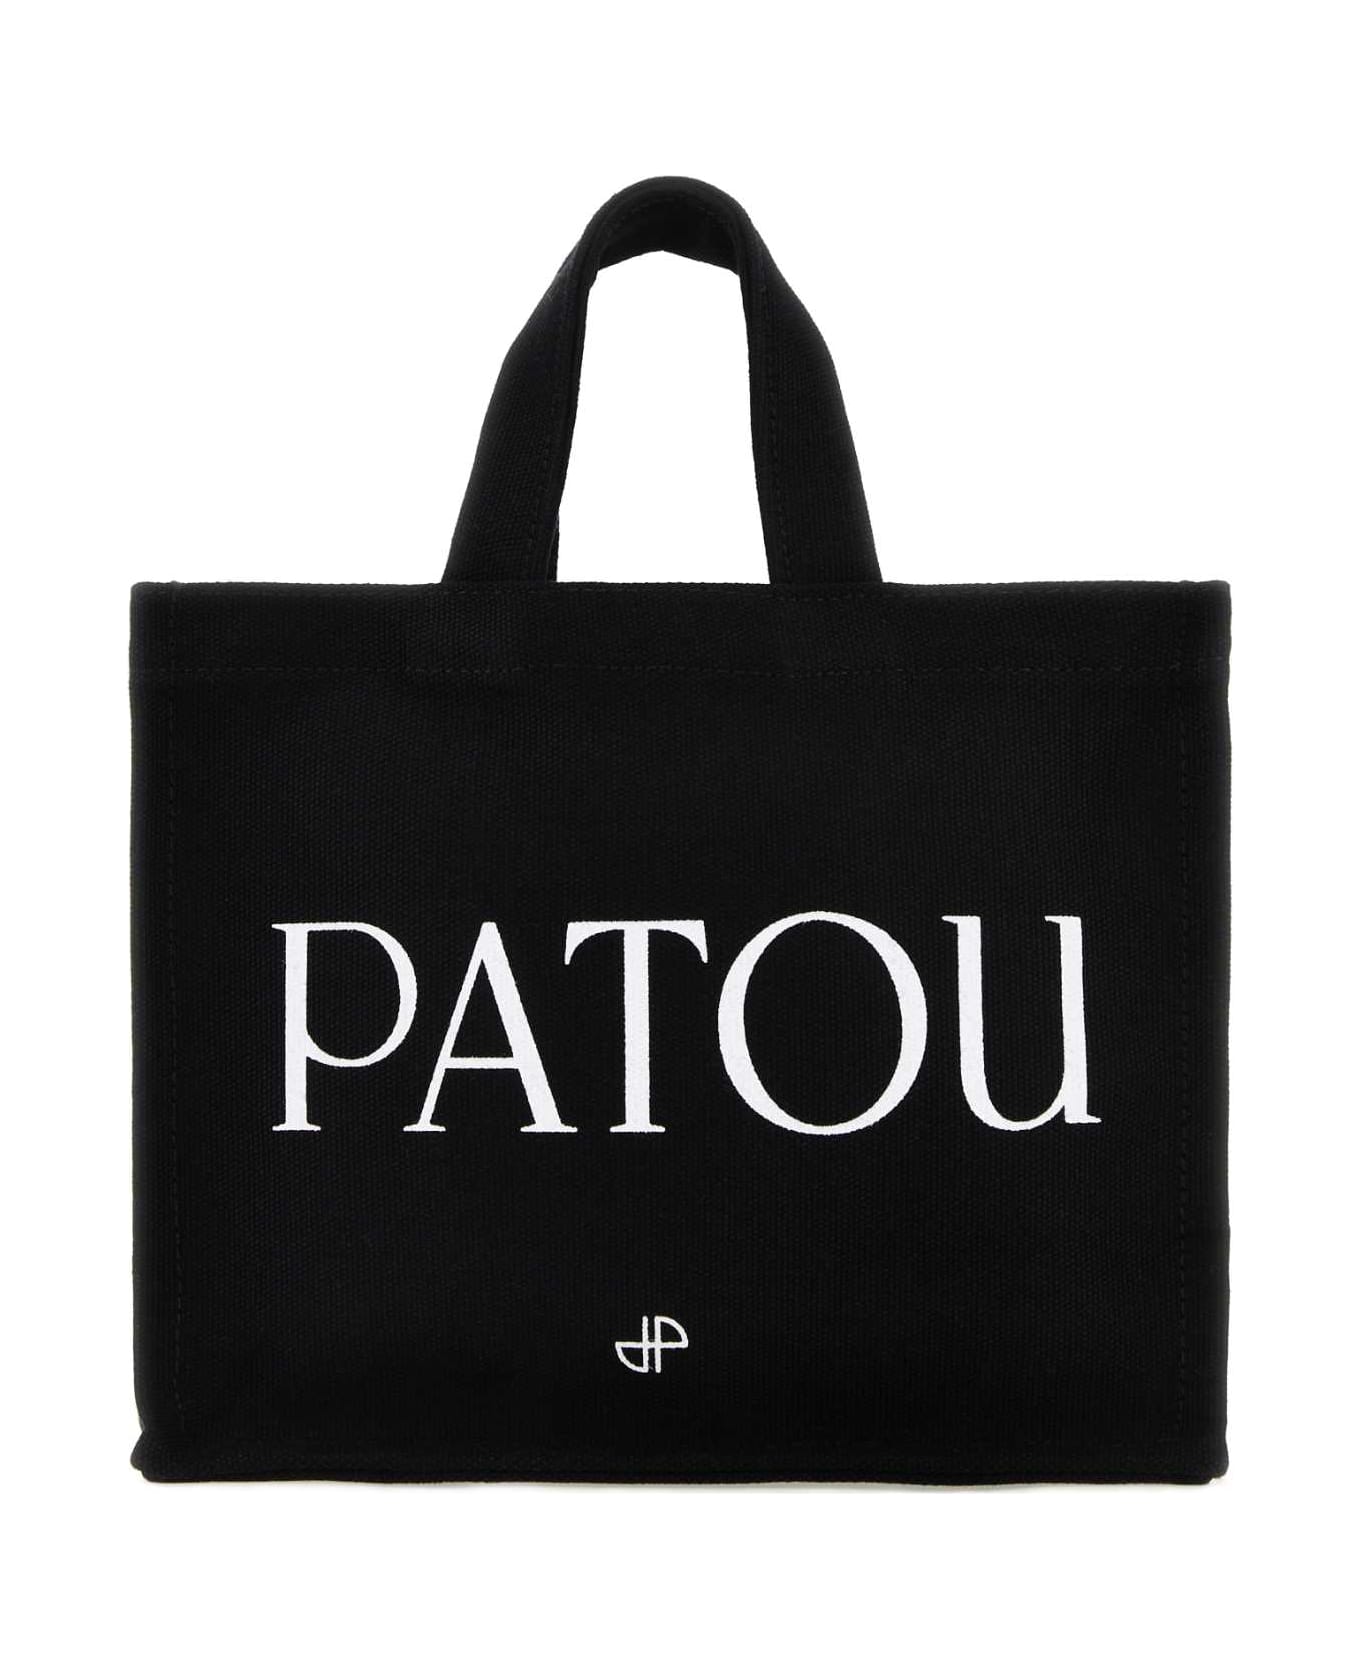 Patou Black Cotton Shopping Bag - 999B トートバッグ